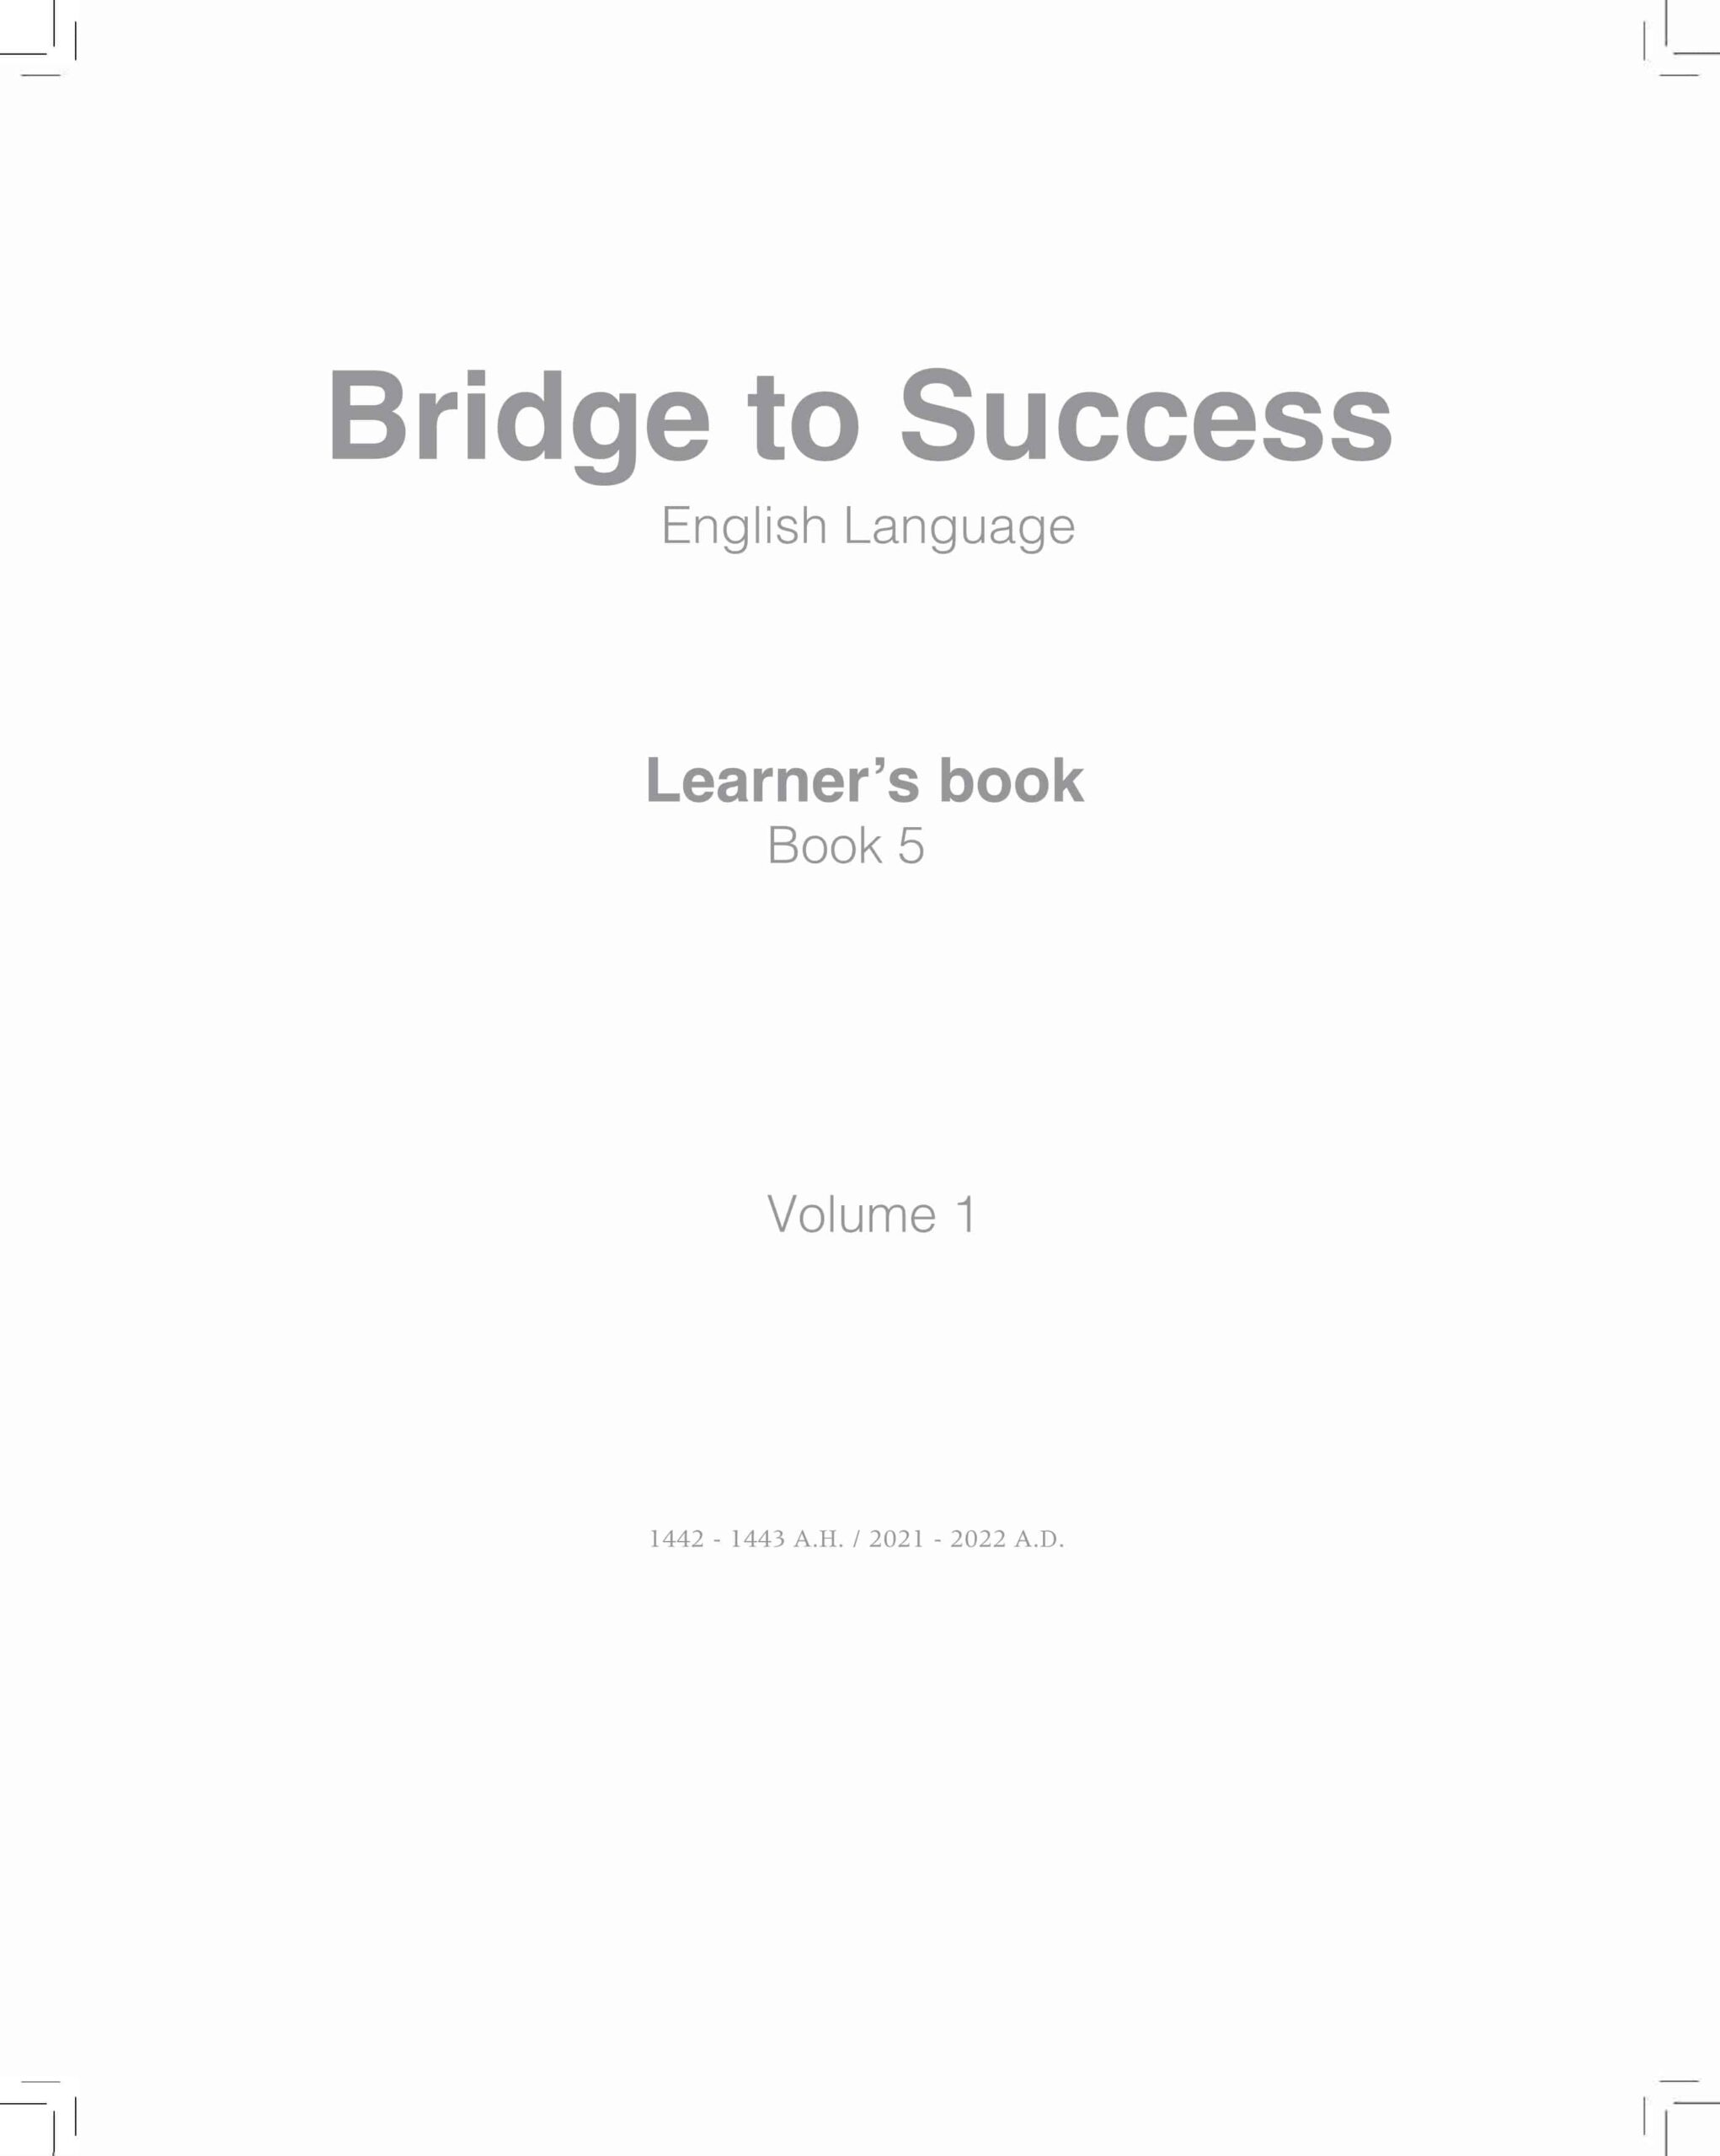 كتاب النشاط Learner’s book اللغة الإنجليزية الصف الخامس الفصل الدراسي الأول 2021-2022